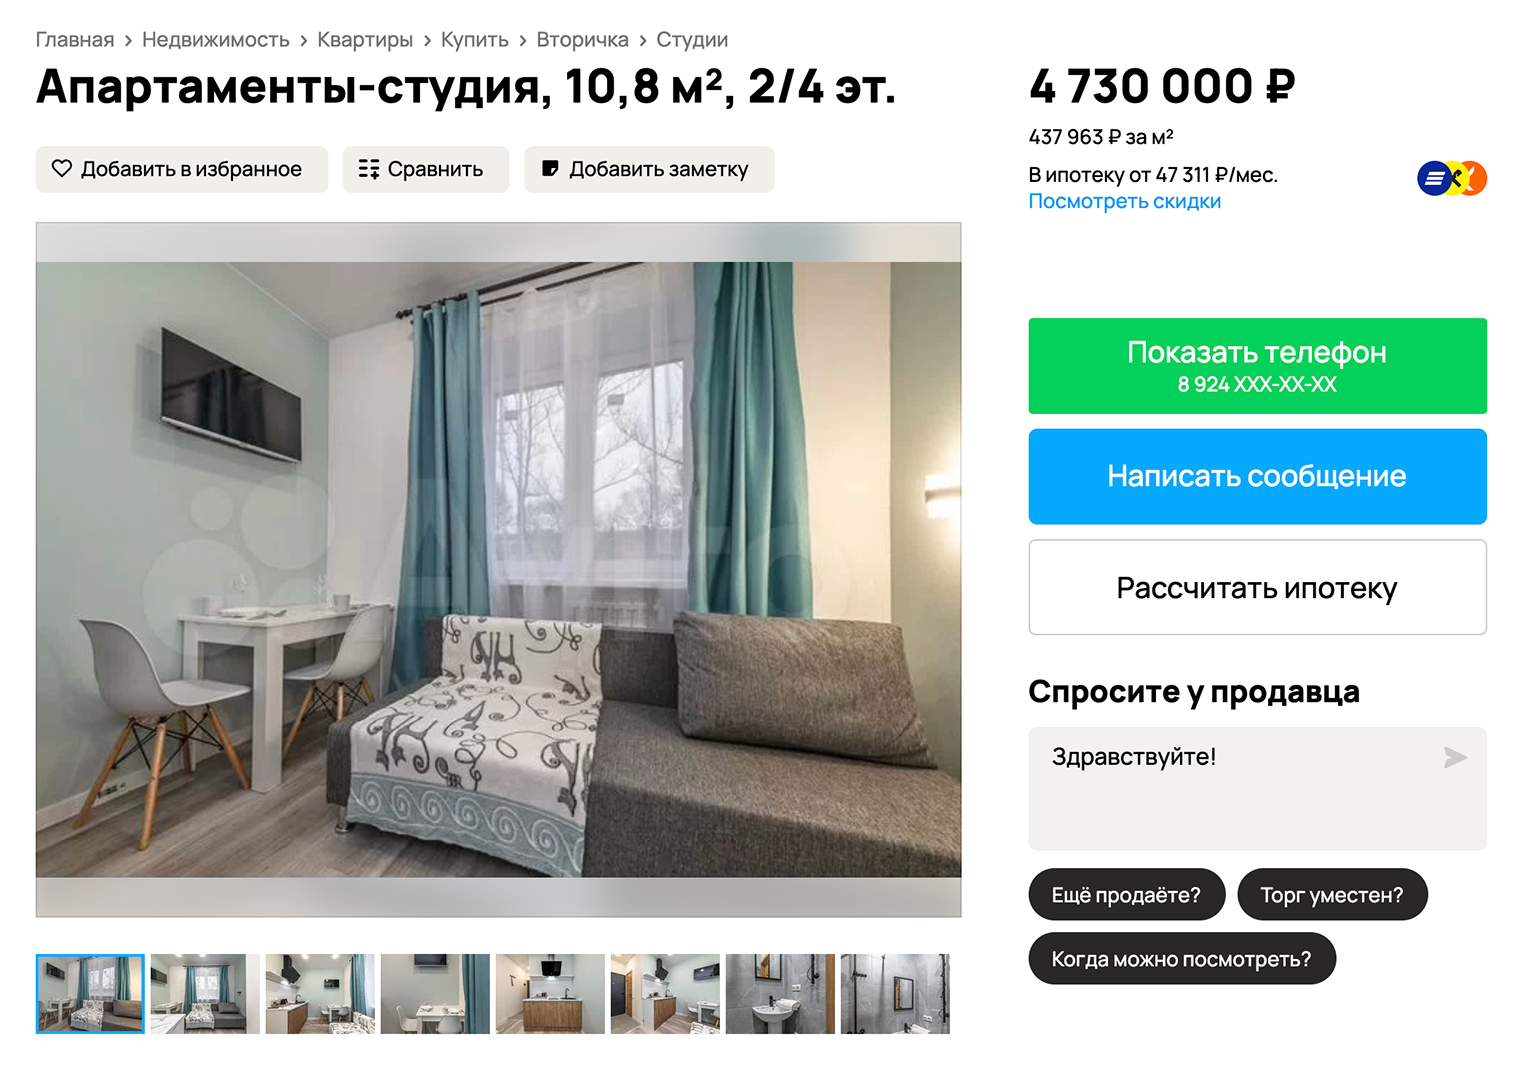 В заголовке объявления указано, что это апартаменты, то есть нежилая недвижимость. Источник: avito.ru